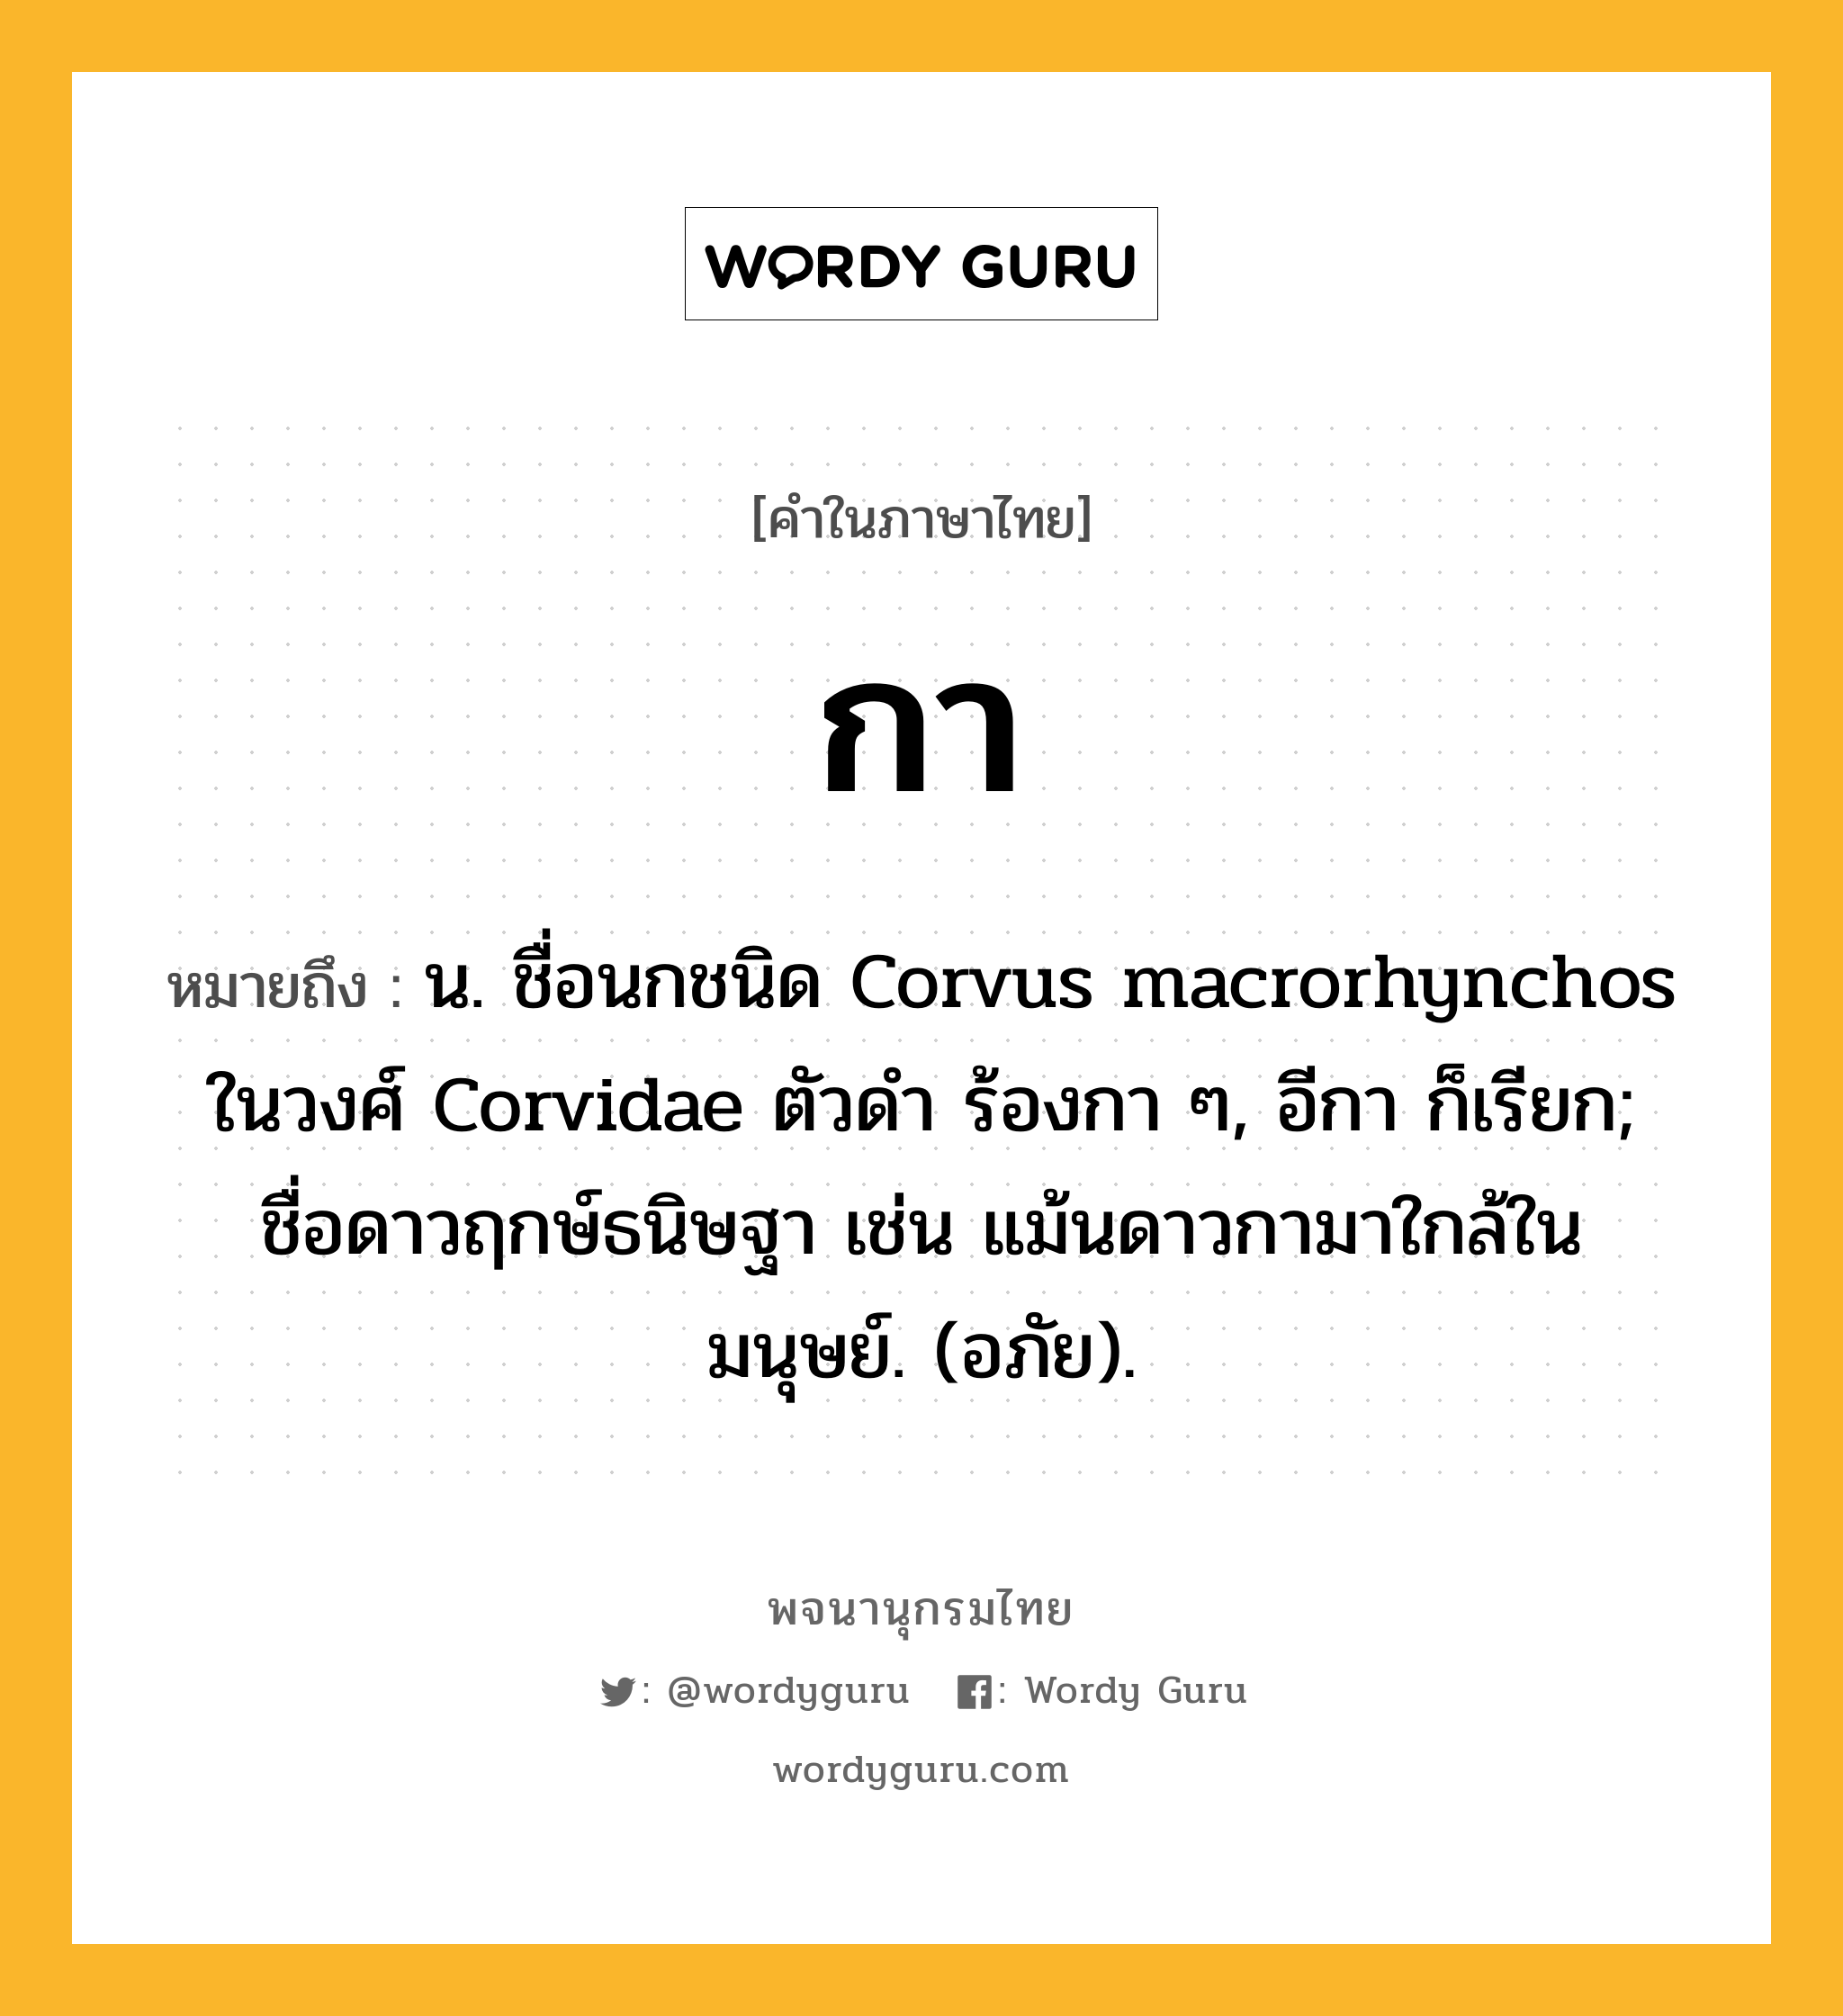 กา ความหมาย หมายถึงอะไร?, คำในภาษาไทย กา หมายถึง น. ชื่อนกชนิด Corvus macrorhynchos ในวงศ์ Corvidae ตัวดํา ร้องกา ๆ, อีกา ก็เรียก; ชื่อดาวฤกษ์ธนิษฐา เช่น แม้นดาวกามาใกล้ในมนุษย์. (อภัย).